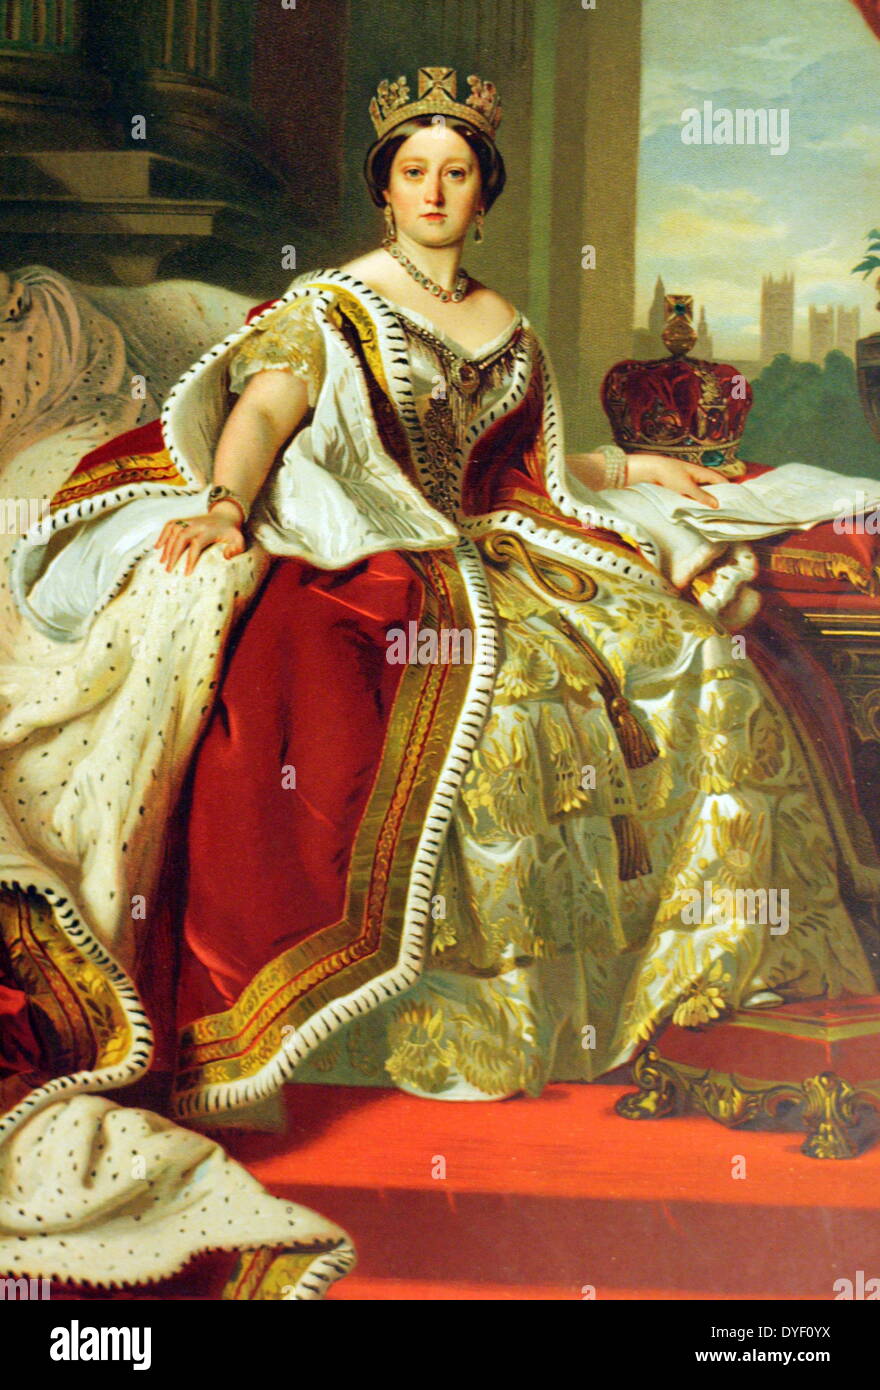 Pintura de la reina victoria fotografías e imágenes de alta resolución -  Alamy